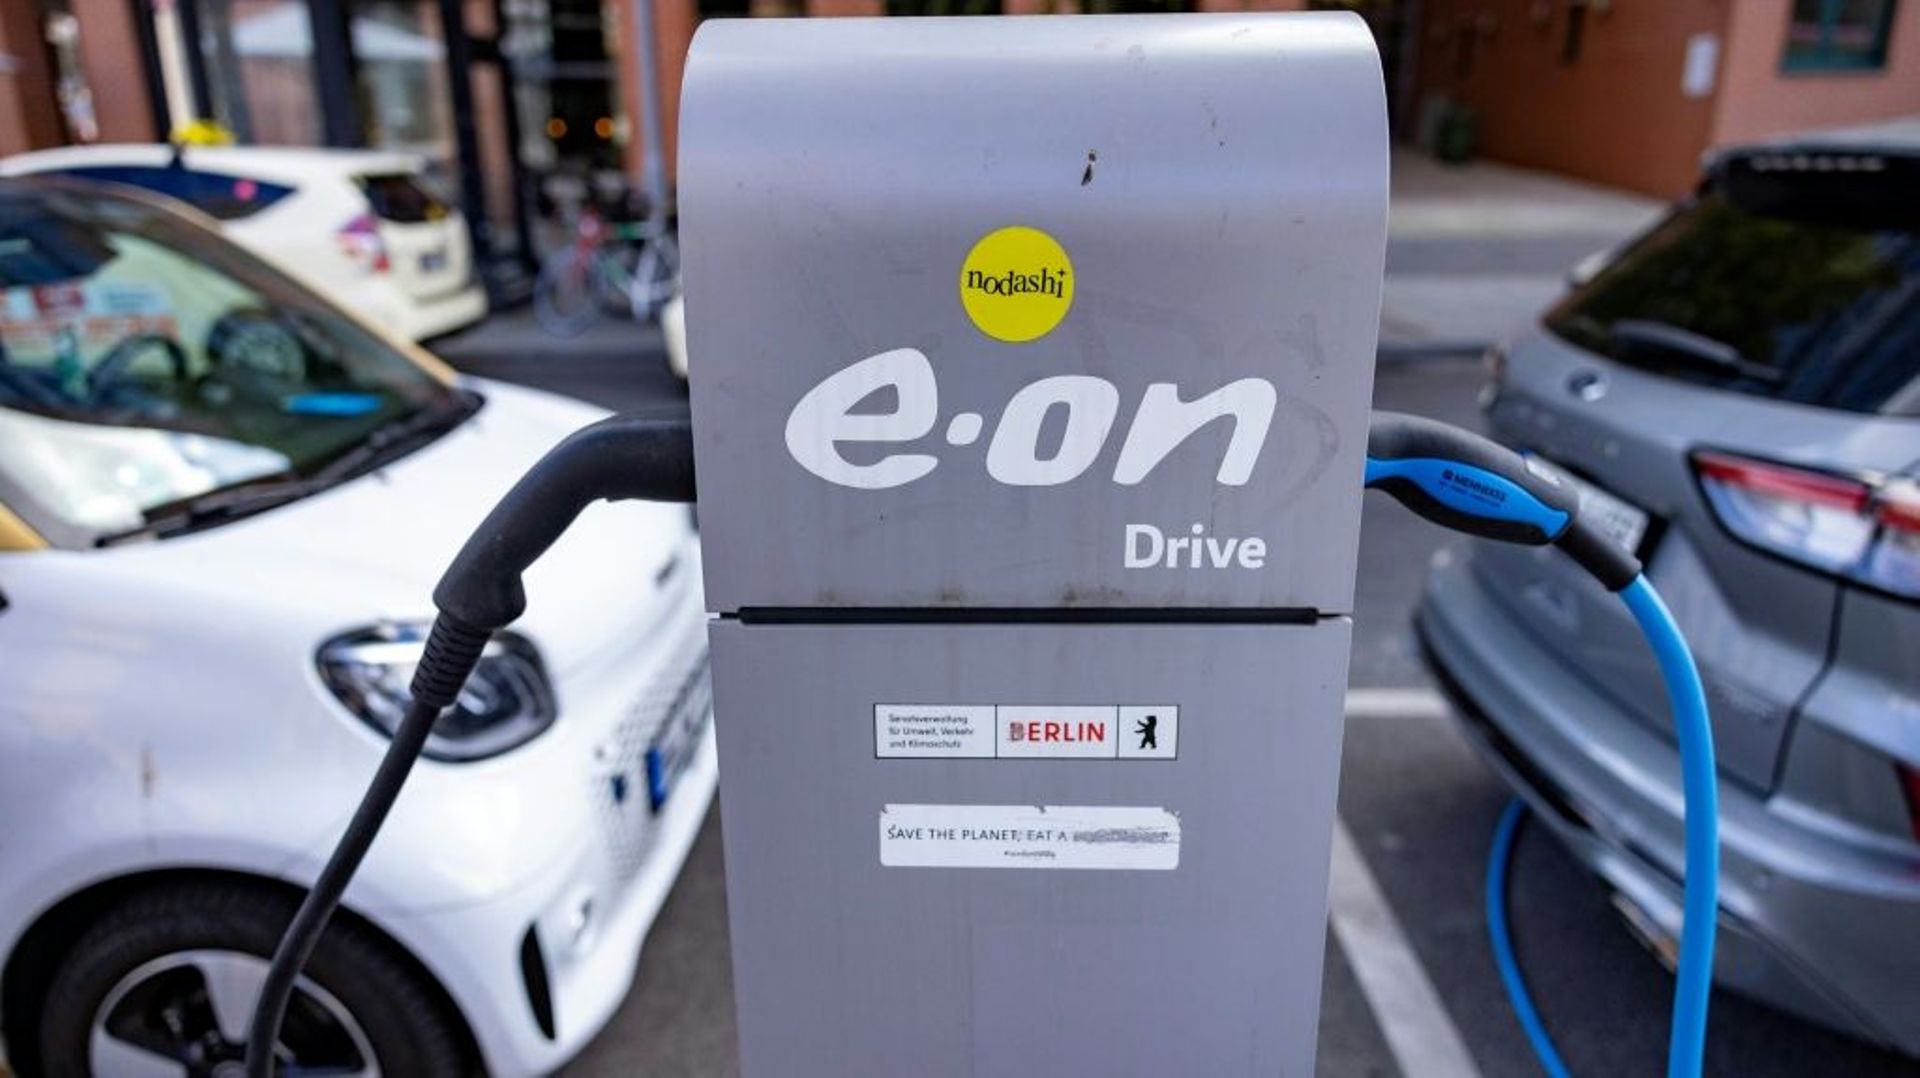 Stations de recharge pour véhicules électriques à Hambourg